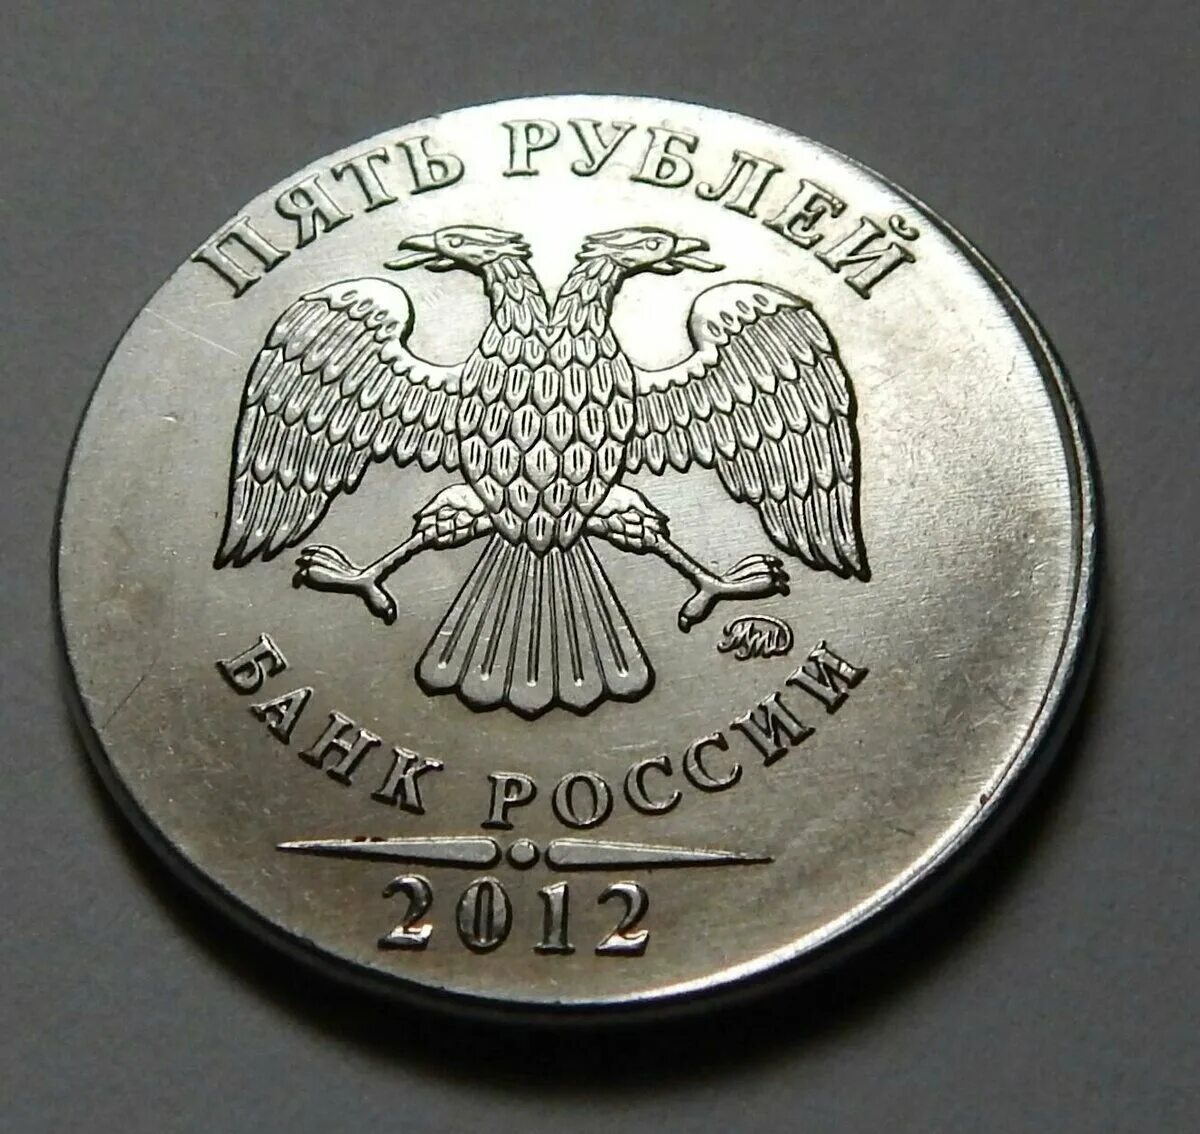 5 руб новые. Монета 5 рублей 2012. Монета 5 рублей 2012 года. Пять рублей 2012 года. Бракованные монеты 5 рублей.